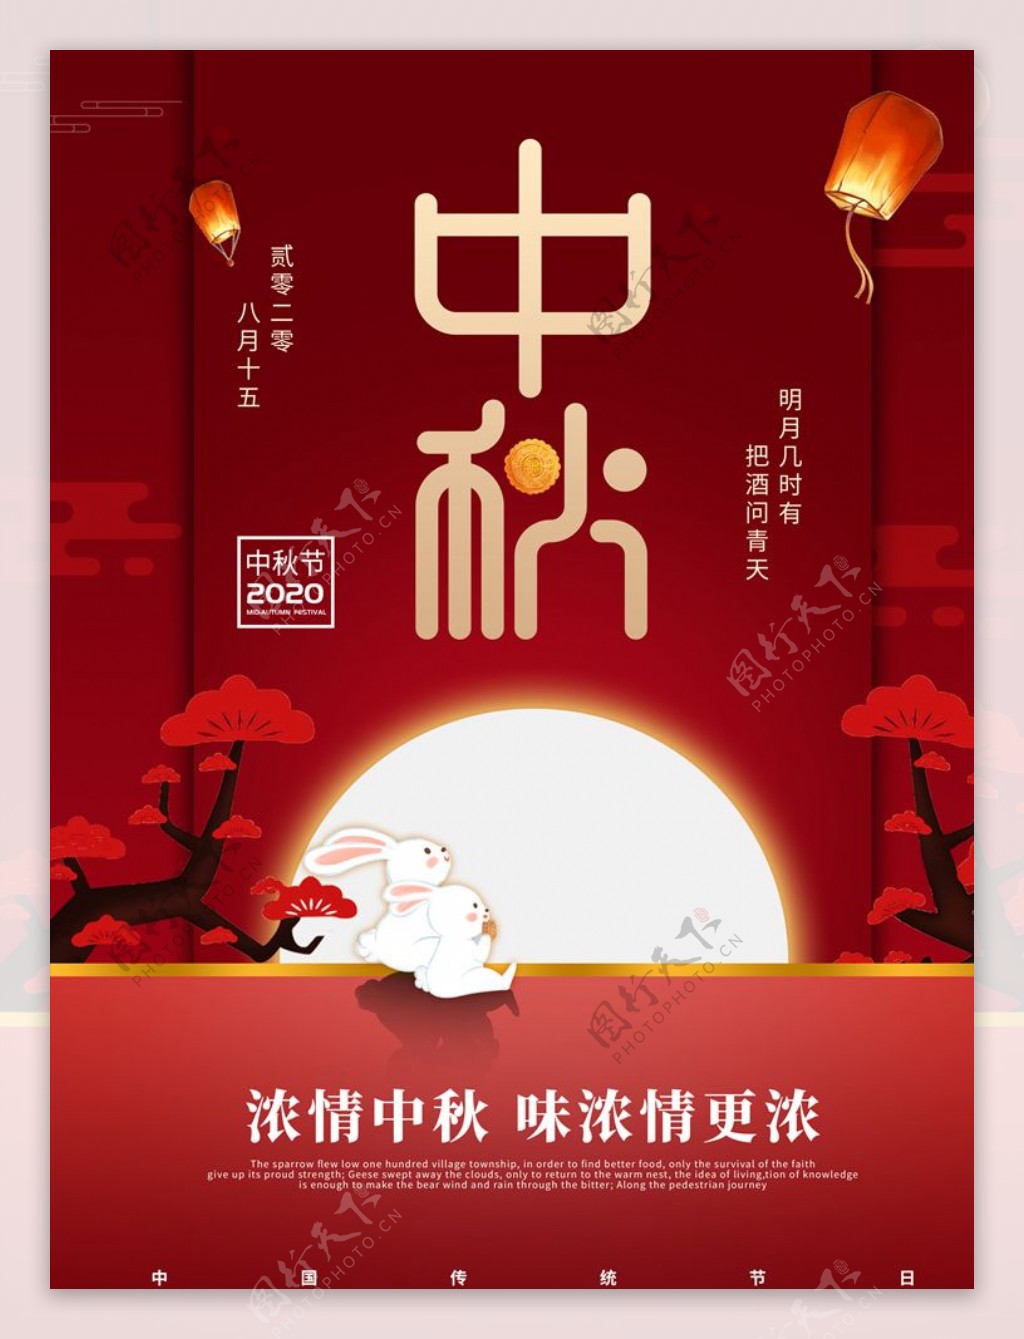 中秋节创意月饼设计品牌宣传海报